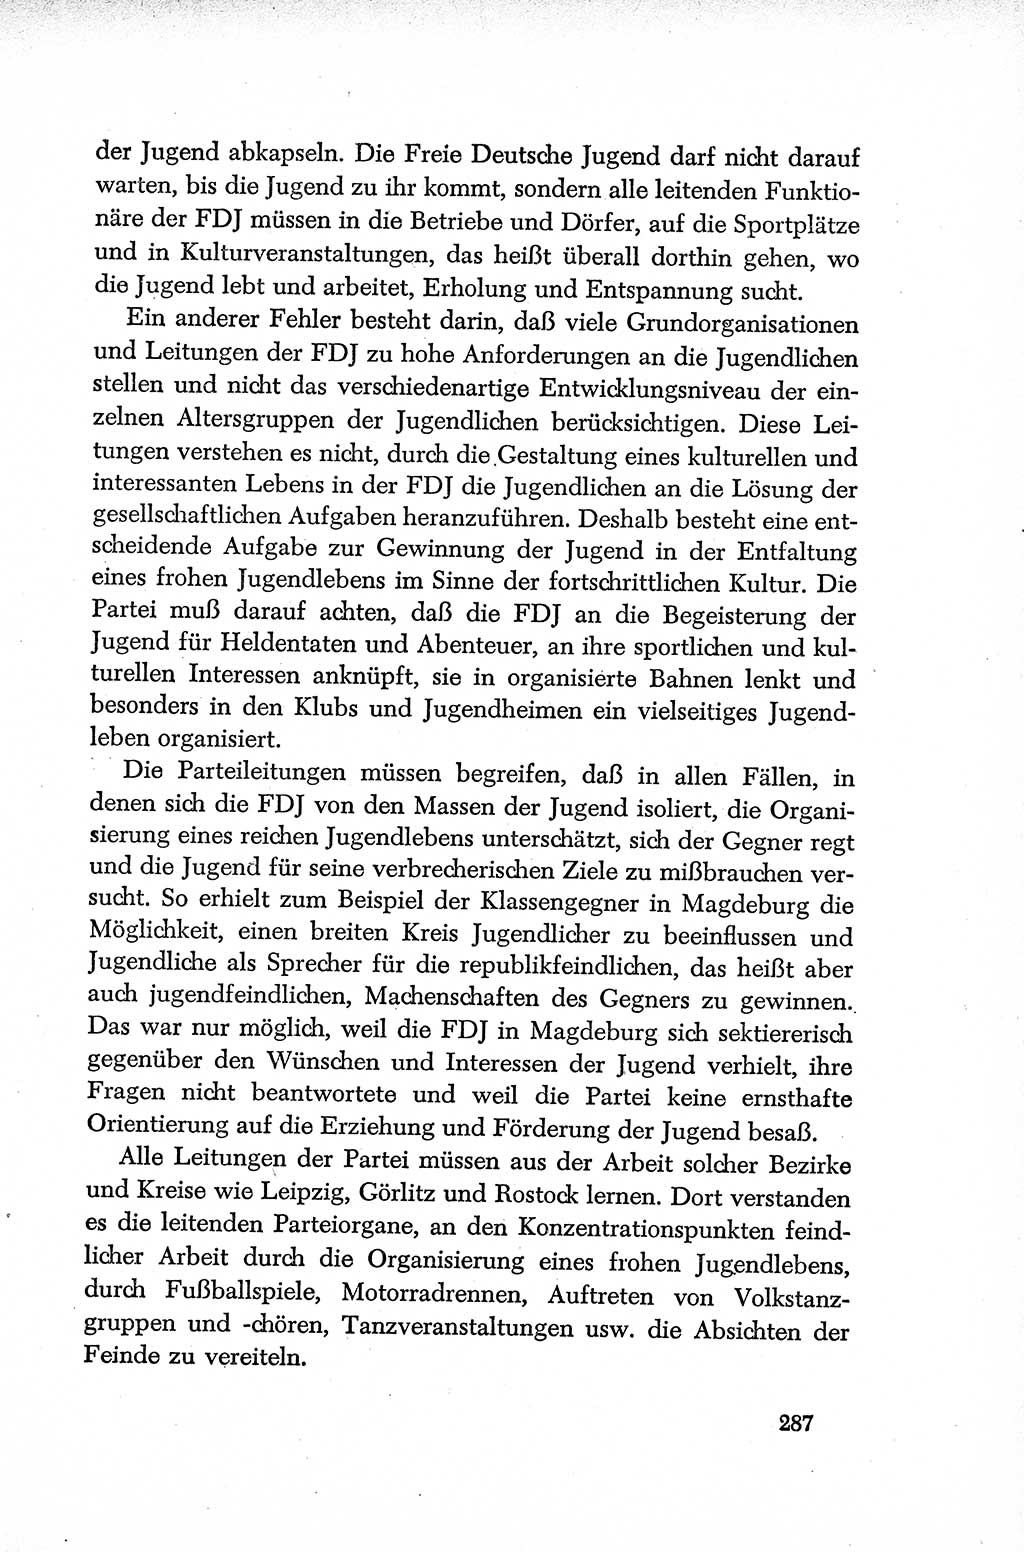 Dokumente der Sozialistischen Einheitspartei Deutschlands (SED) [Deutsche Demokratische Republik (DDR)] 1952-1953, Seite 287 (Dok. SED DDR 1952-1953, S. 287)